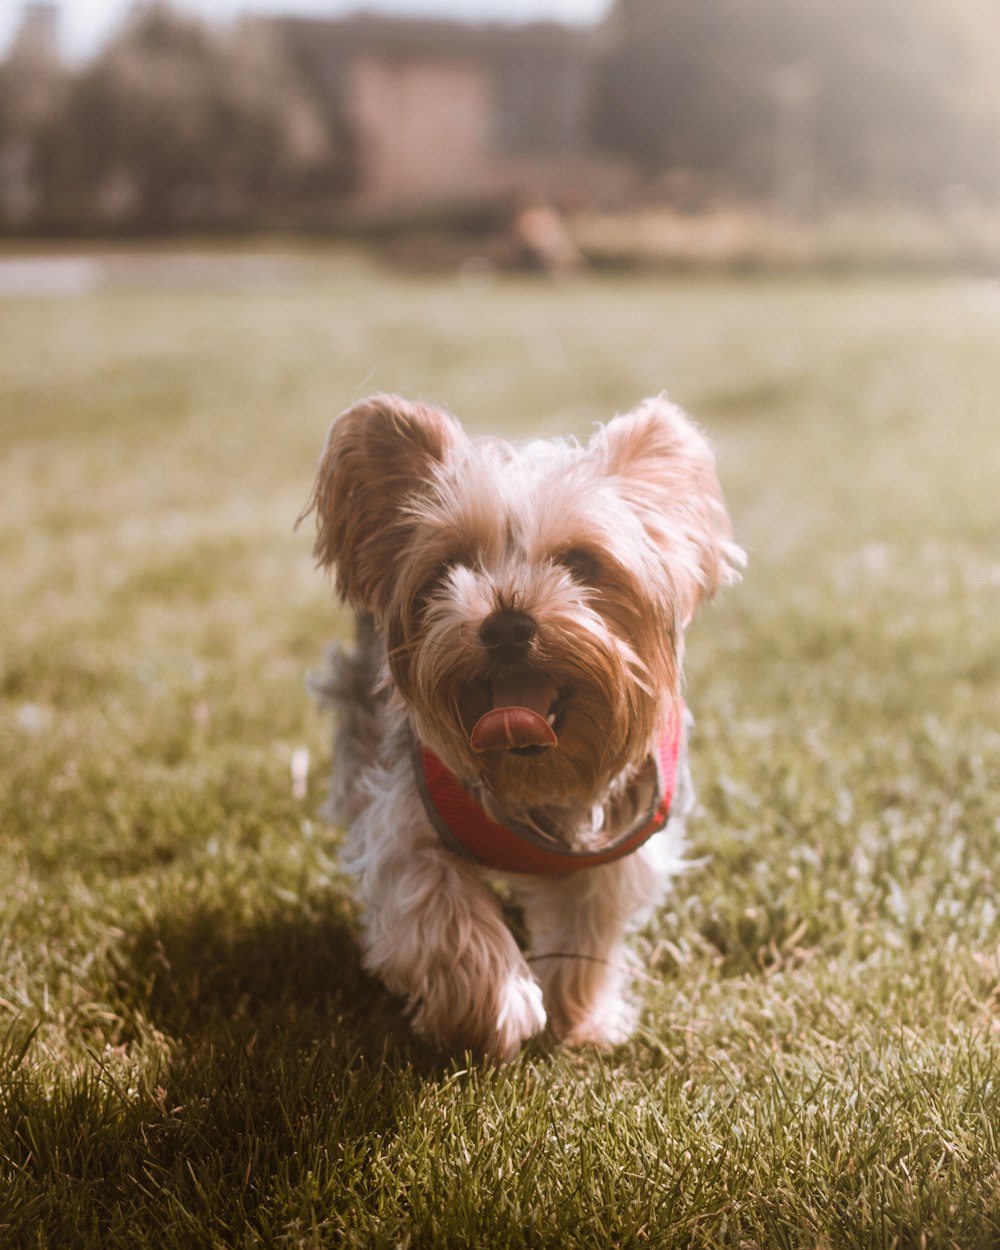 cucciolo marrone che cammina sul campo d'erba